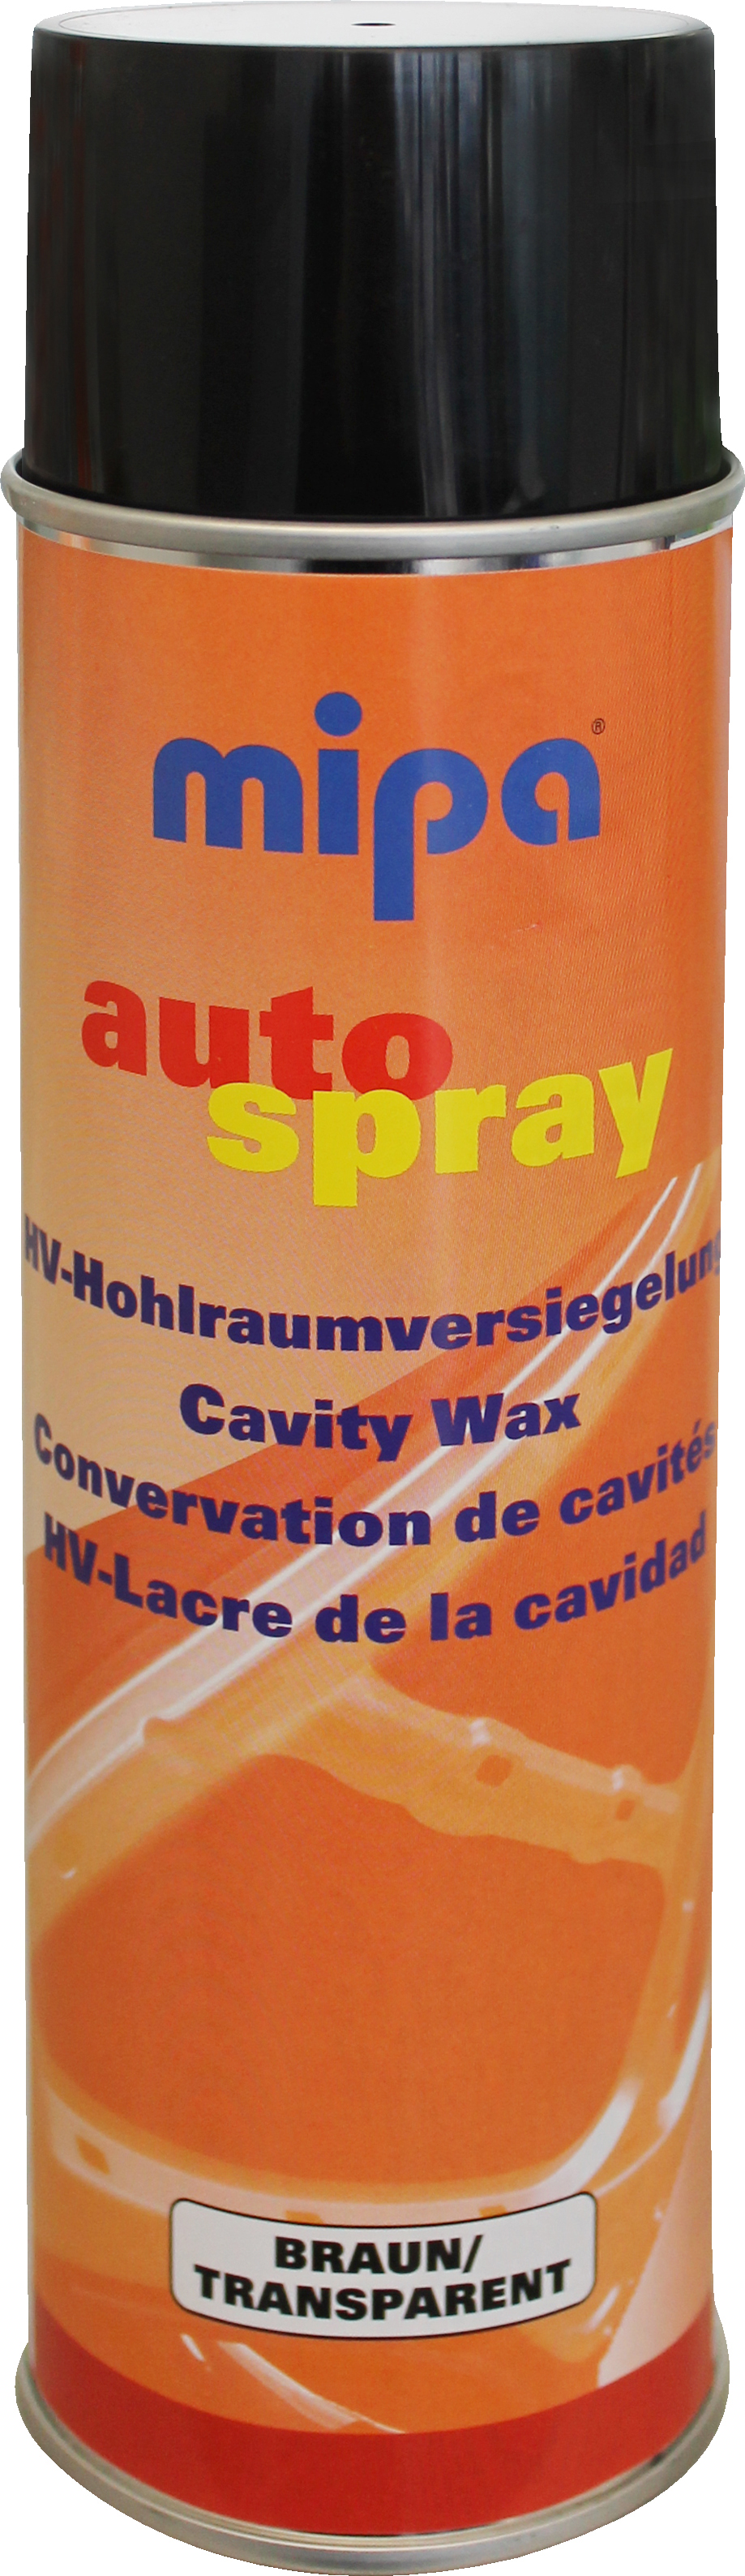 Mipa Steinschlagschutz Spray